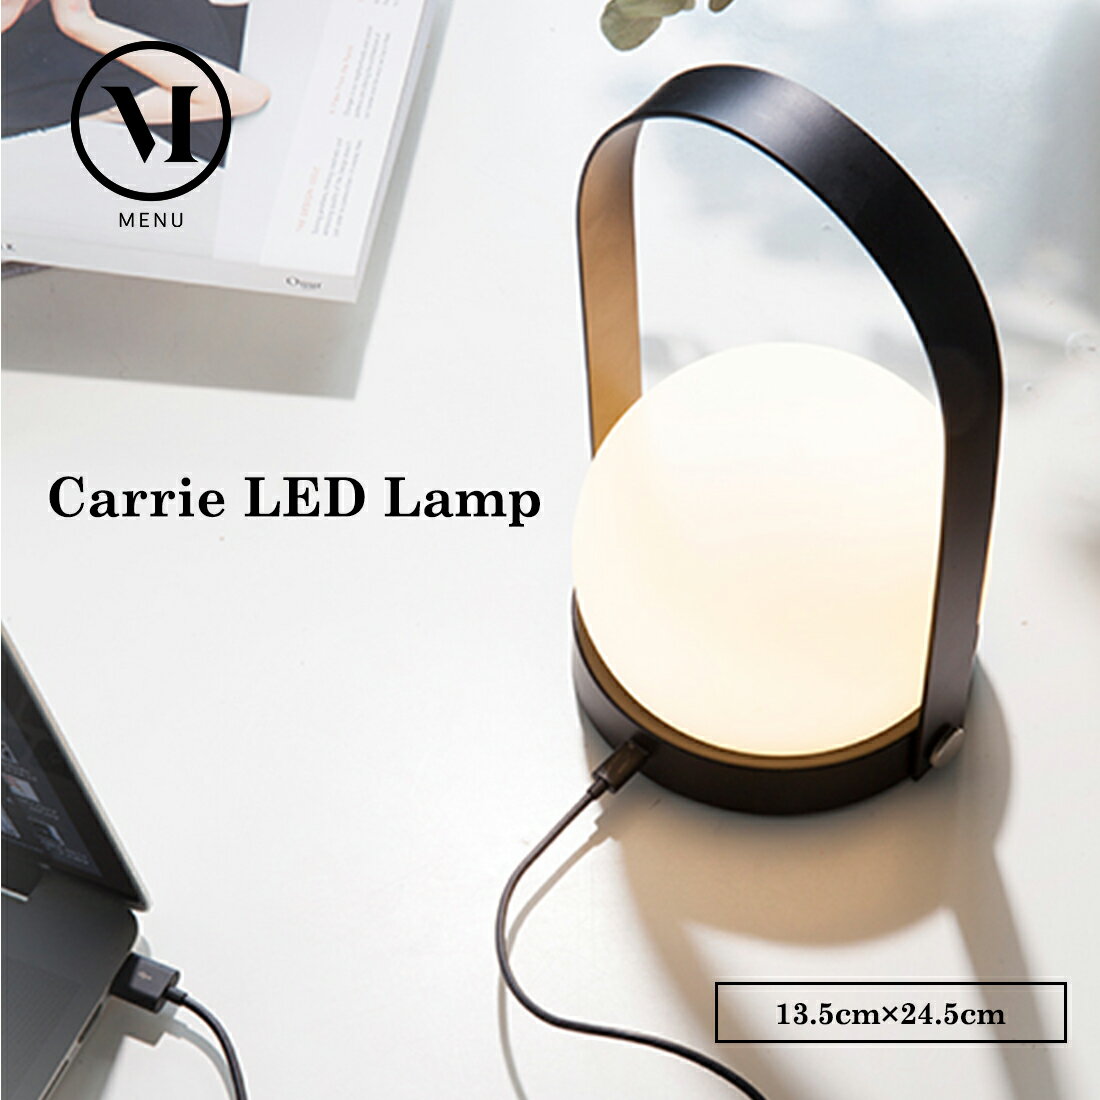   i Audo Copenhagen Carrie LED Lamp L[ LED v k CeA Cg qbQ R[hX USB[d